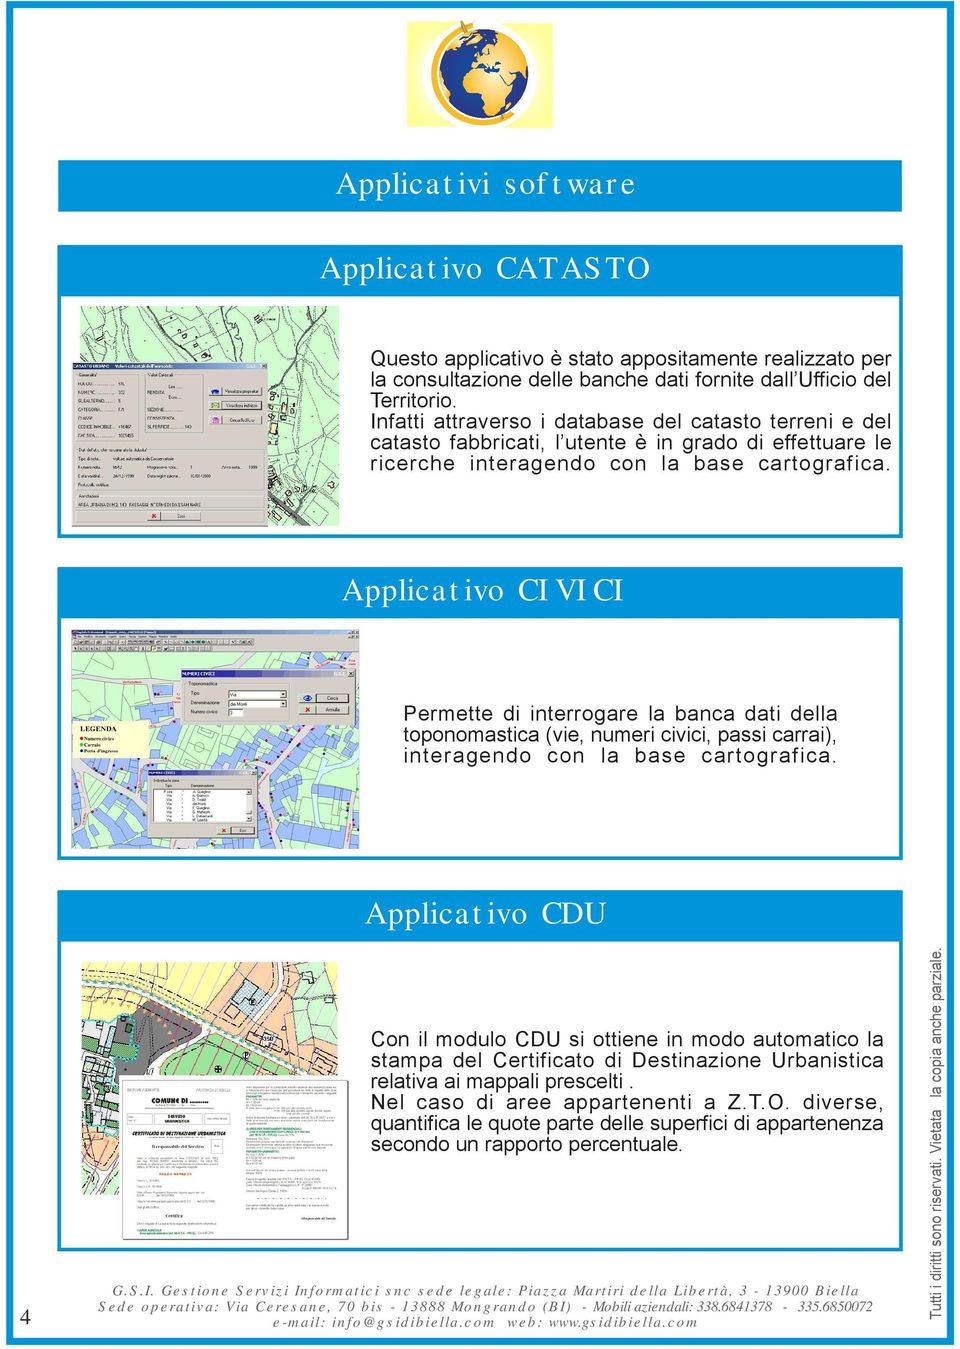 Applicativo CIVICI Permette di interrogare la banca dati della toponomastica (vie, numeri civici, passi carrai), interagendo con la base cartografica.